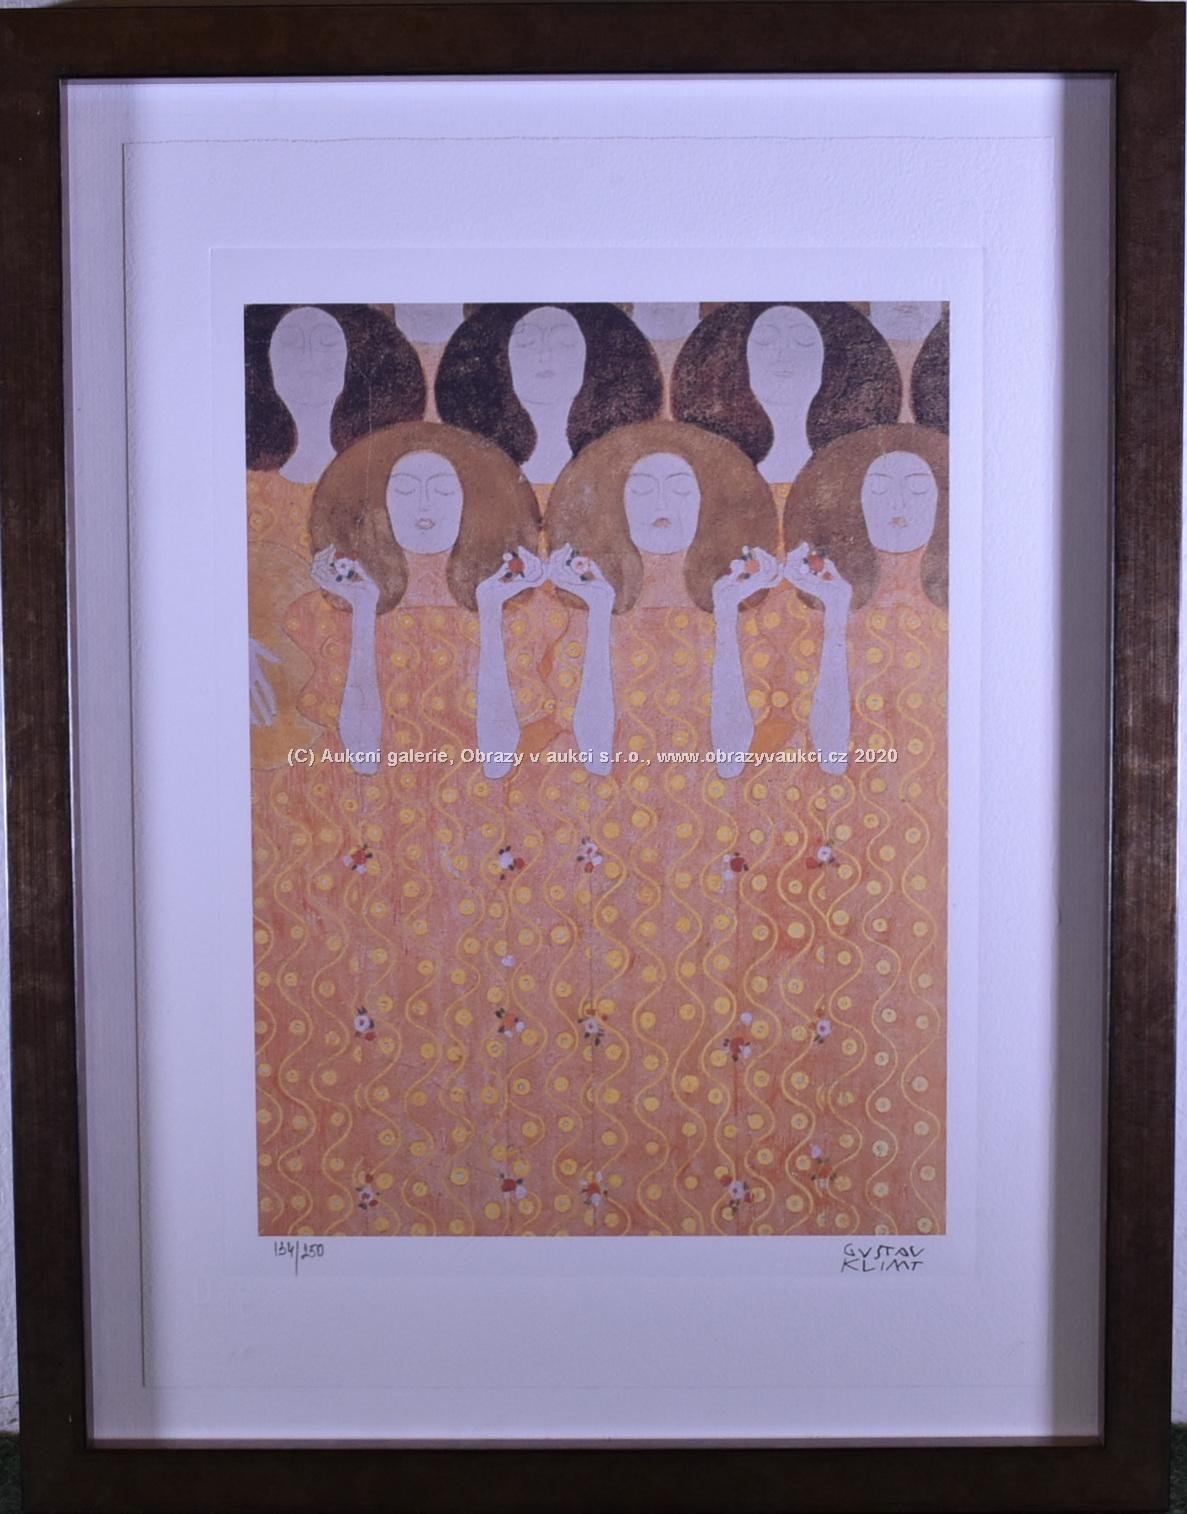 Gustav Klimt - Chor der Paradiesengel